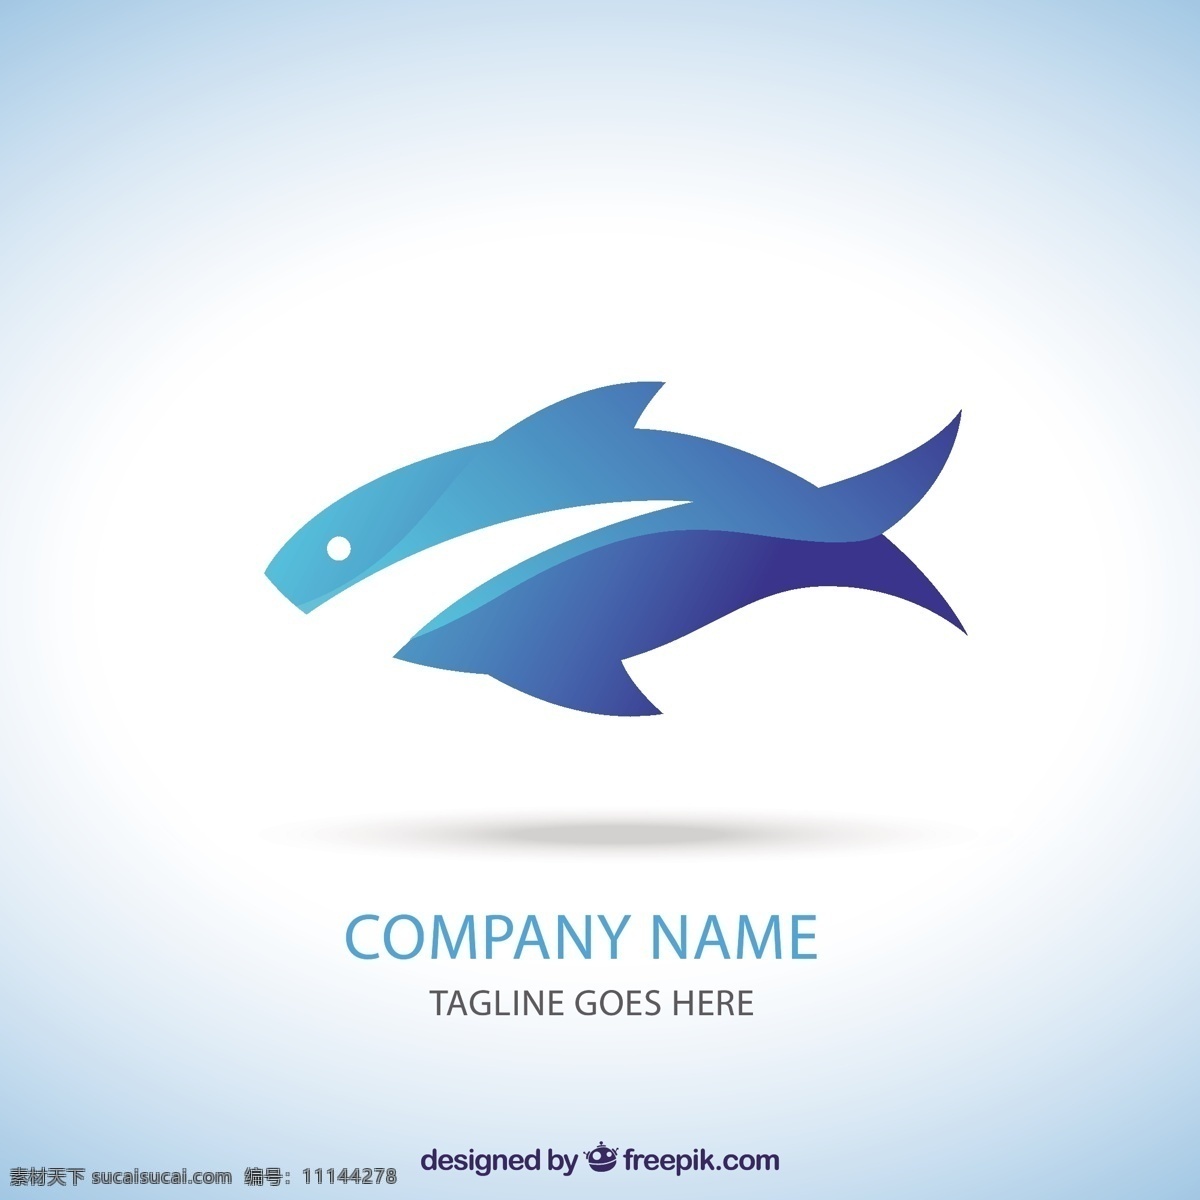 蓝鱼标志图片 标志 动物 蓝色 企业 公司 身份 海鲜 标识 公司标志 图标 高清 源文件